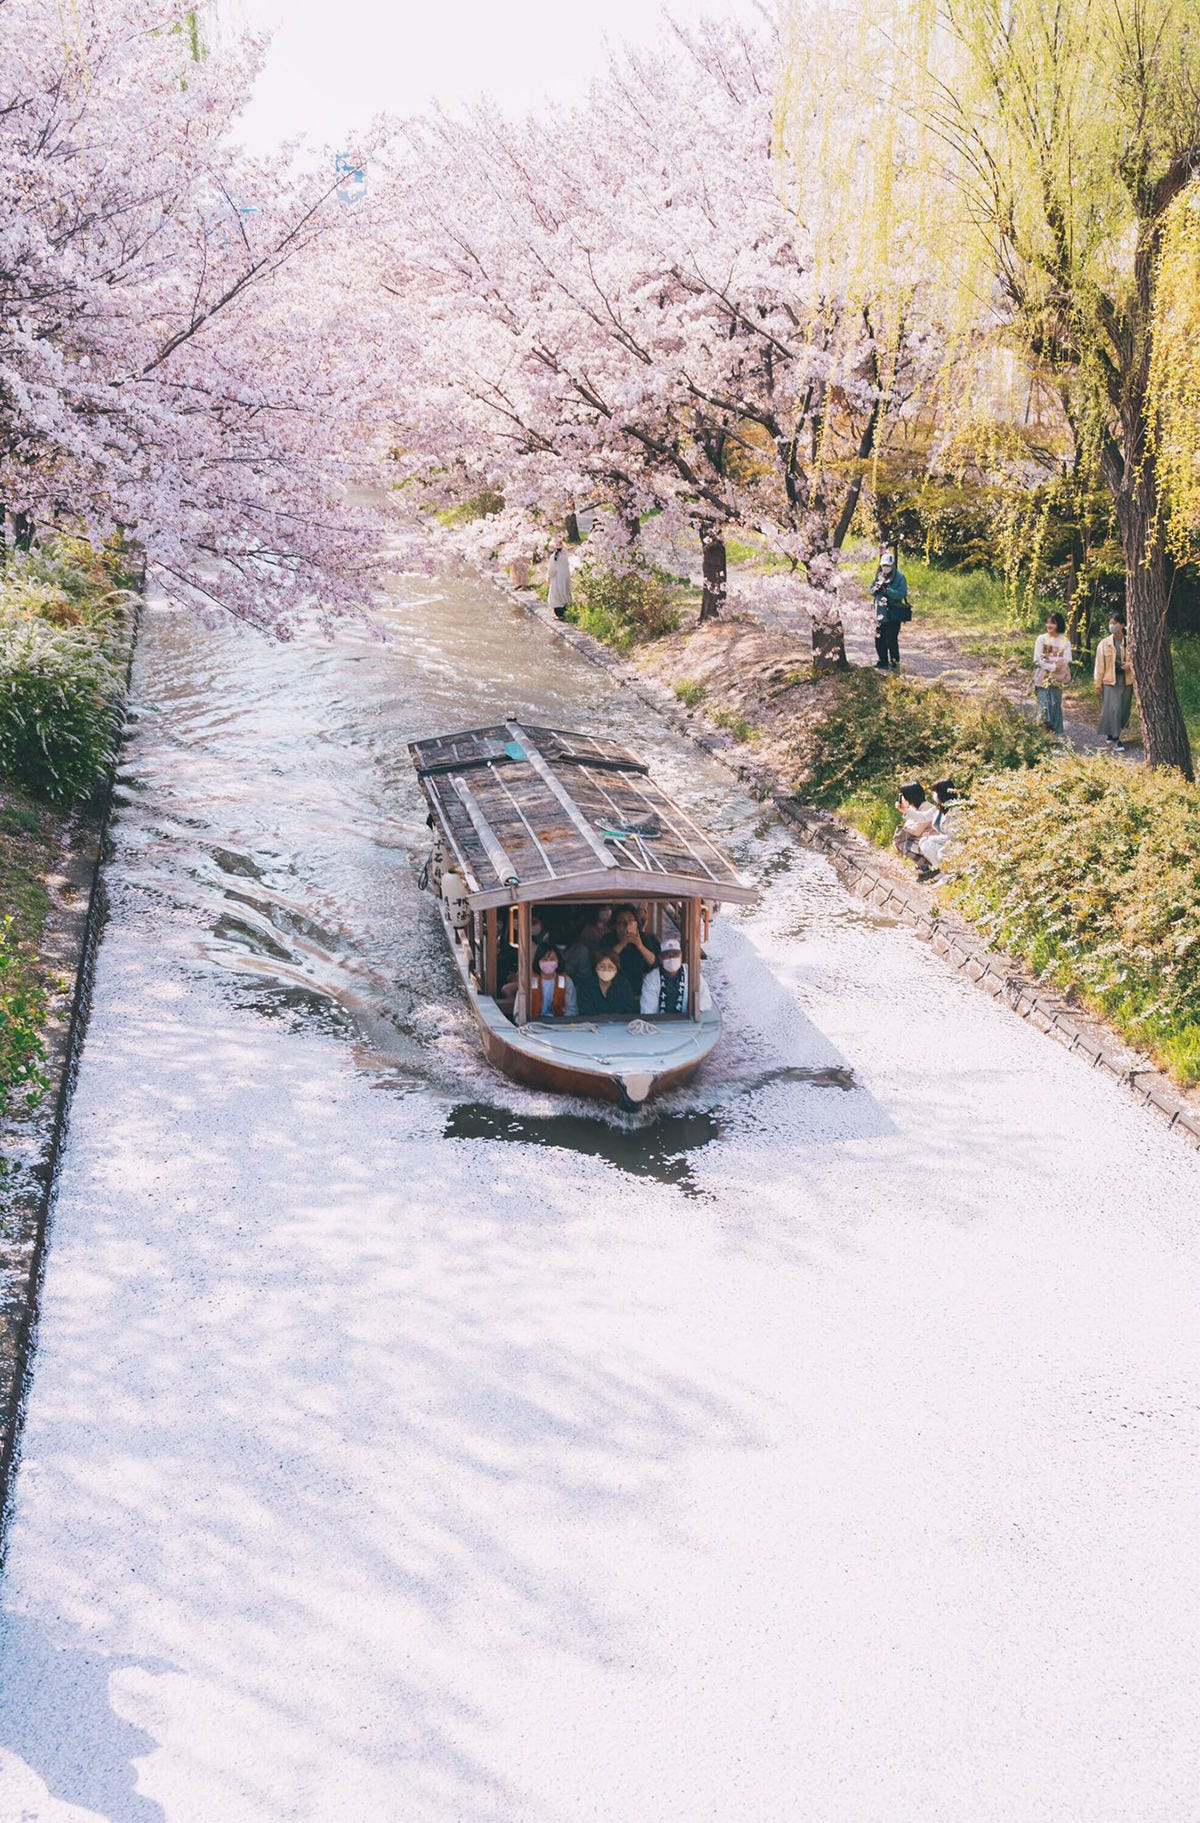 花筏 京都伏見 桜の絨毯をゆく船の写真に28万いいね この季節の最高の1枚 ここまでの花筏は初めて見ました マイナビニュース